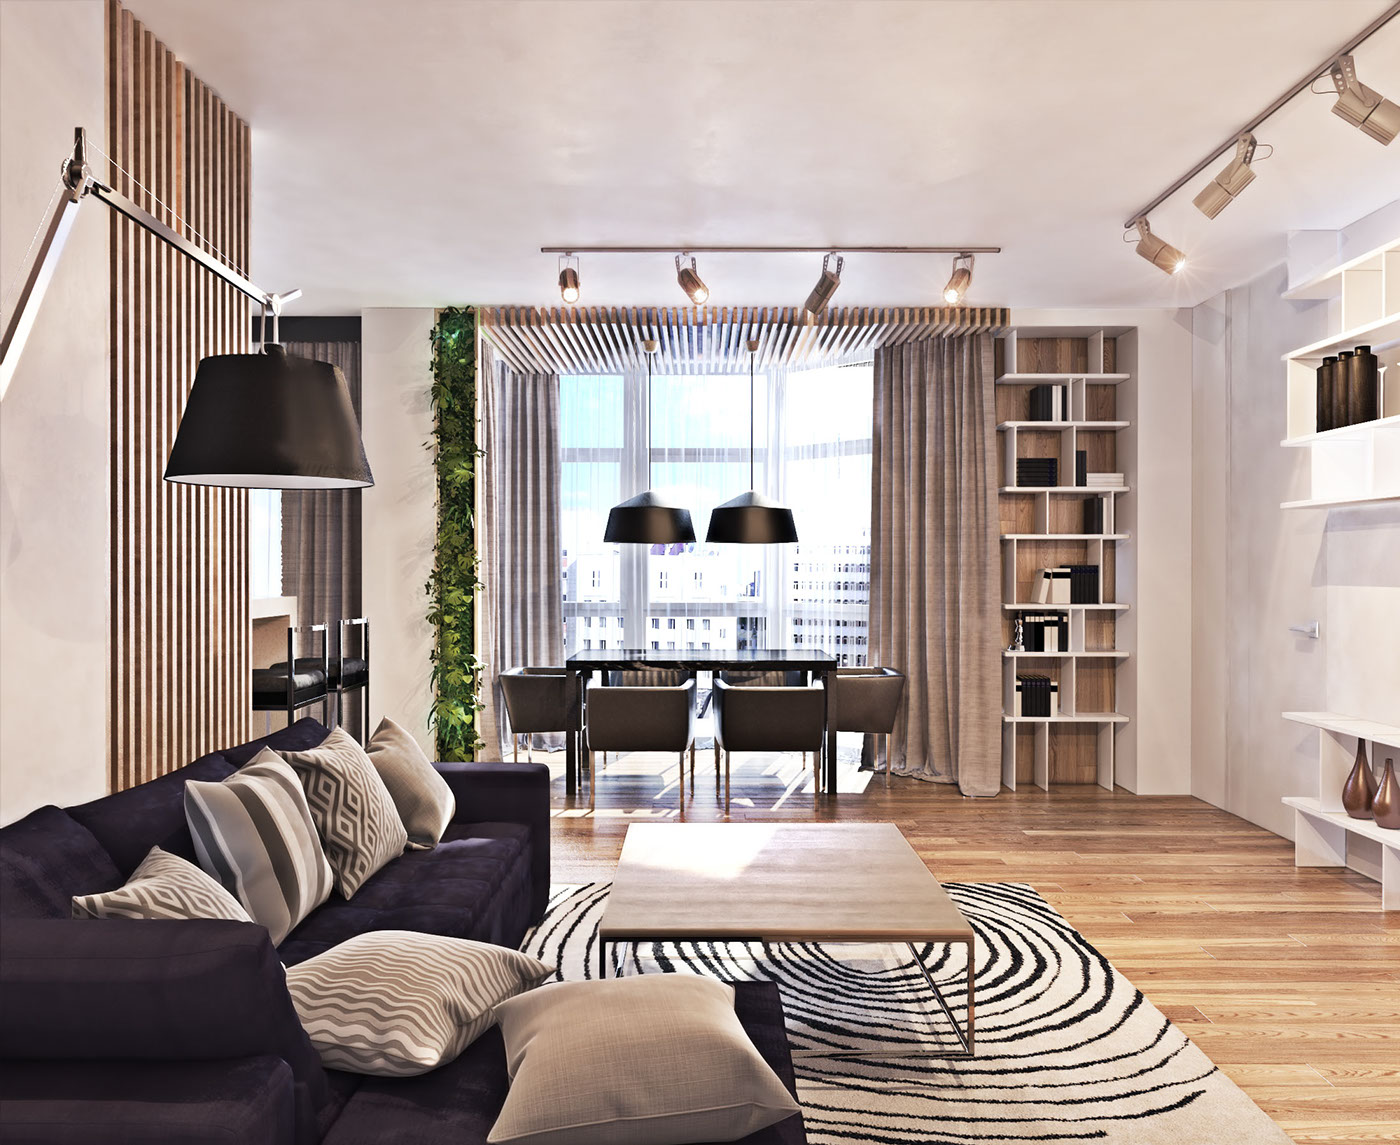 Wedo thiết kế nội thất không gian mở cho phòng khách nhà đẹp